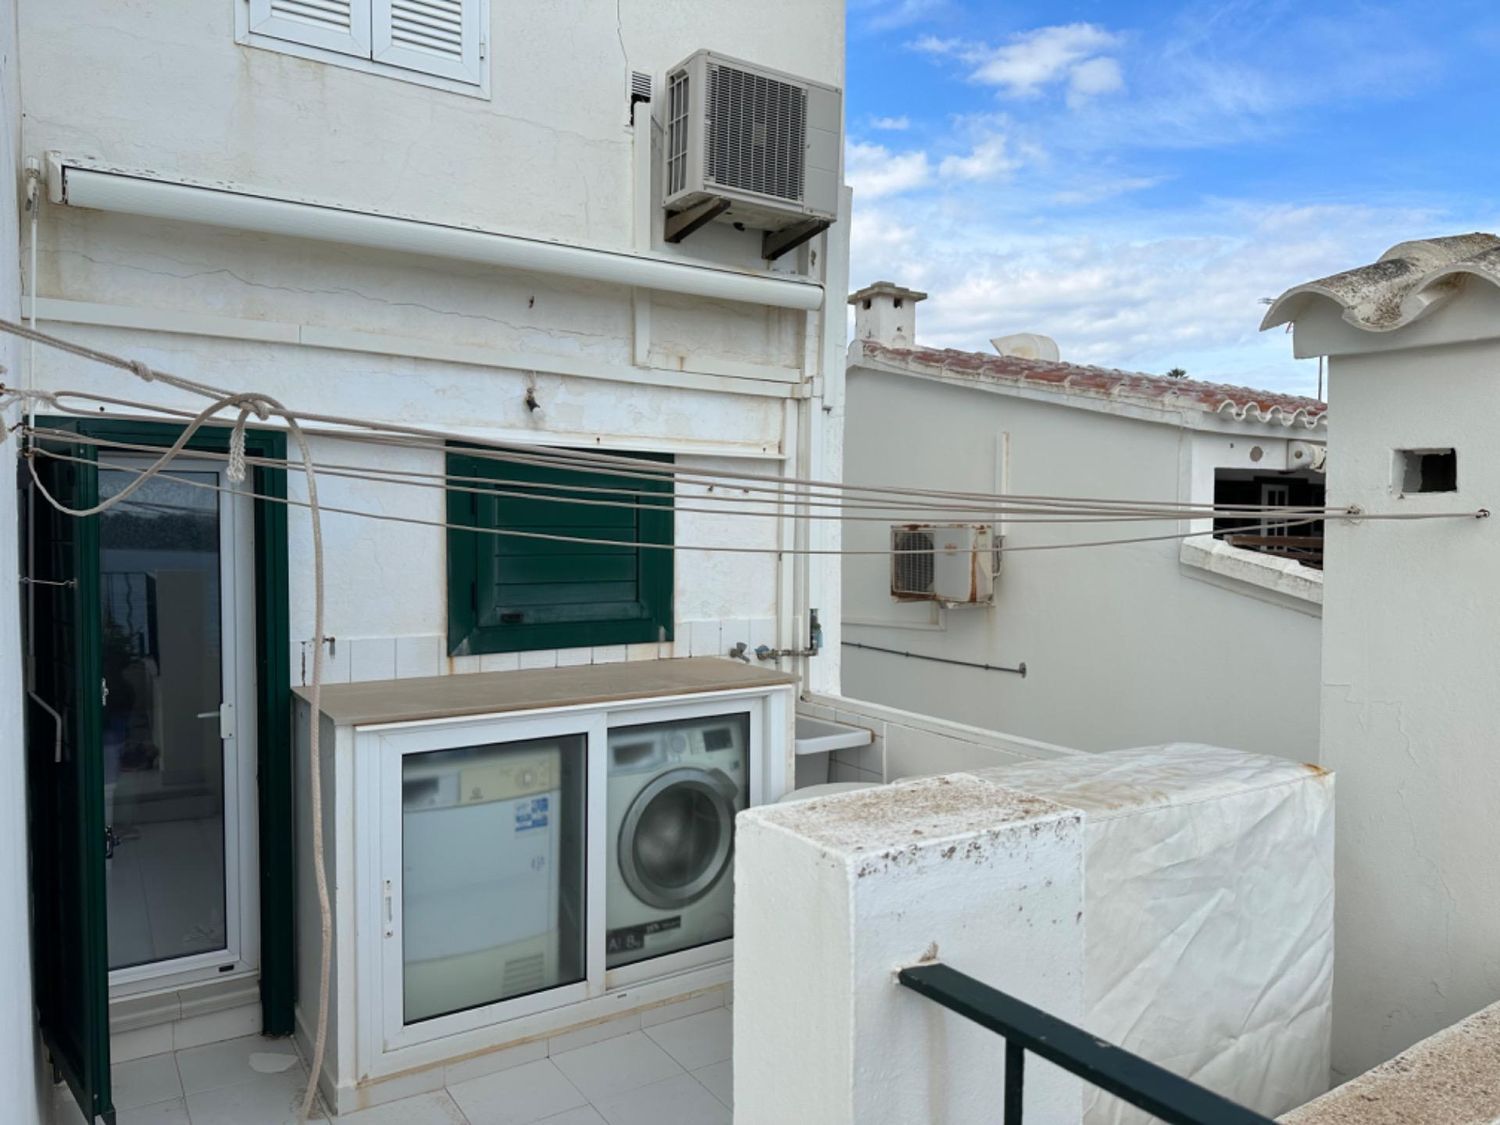 Duplex for sale in first sea line in Calle del Rosari, in Fornells